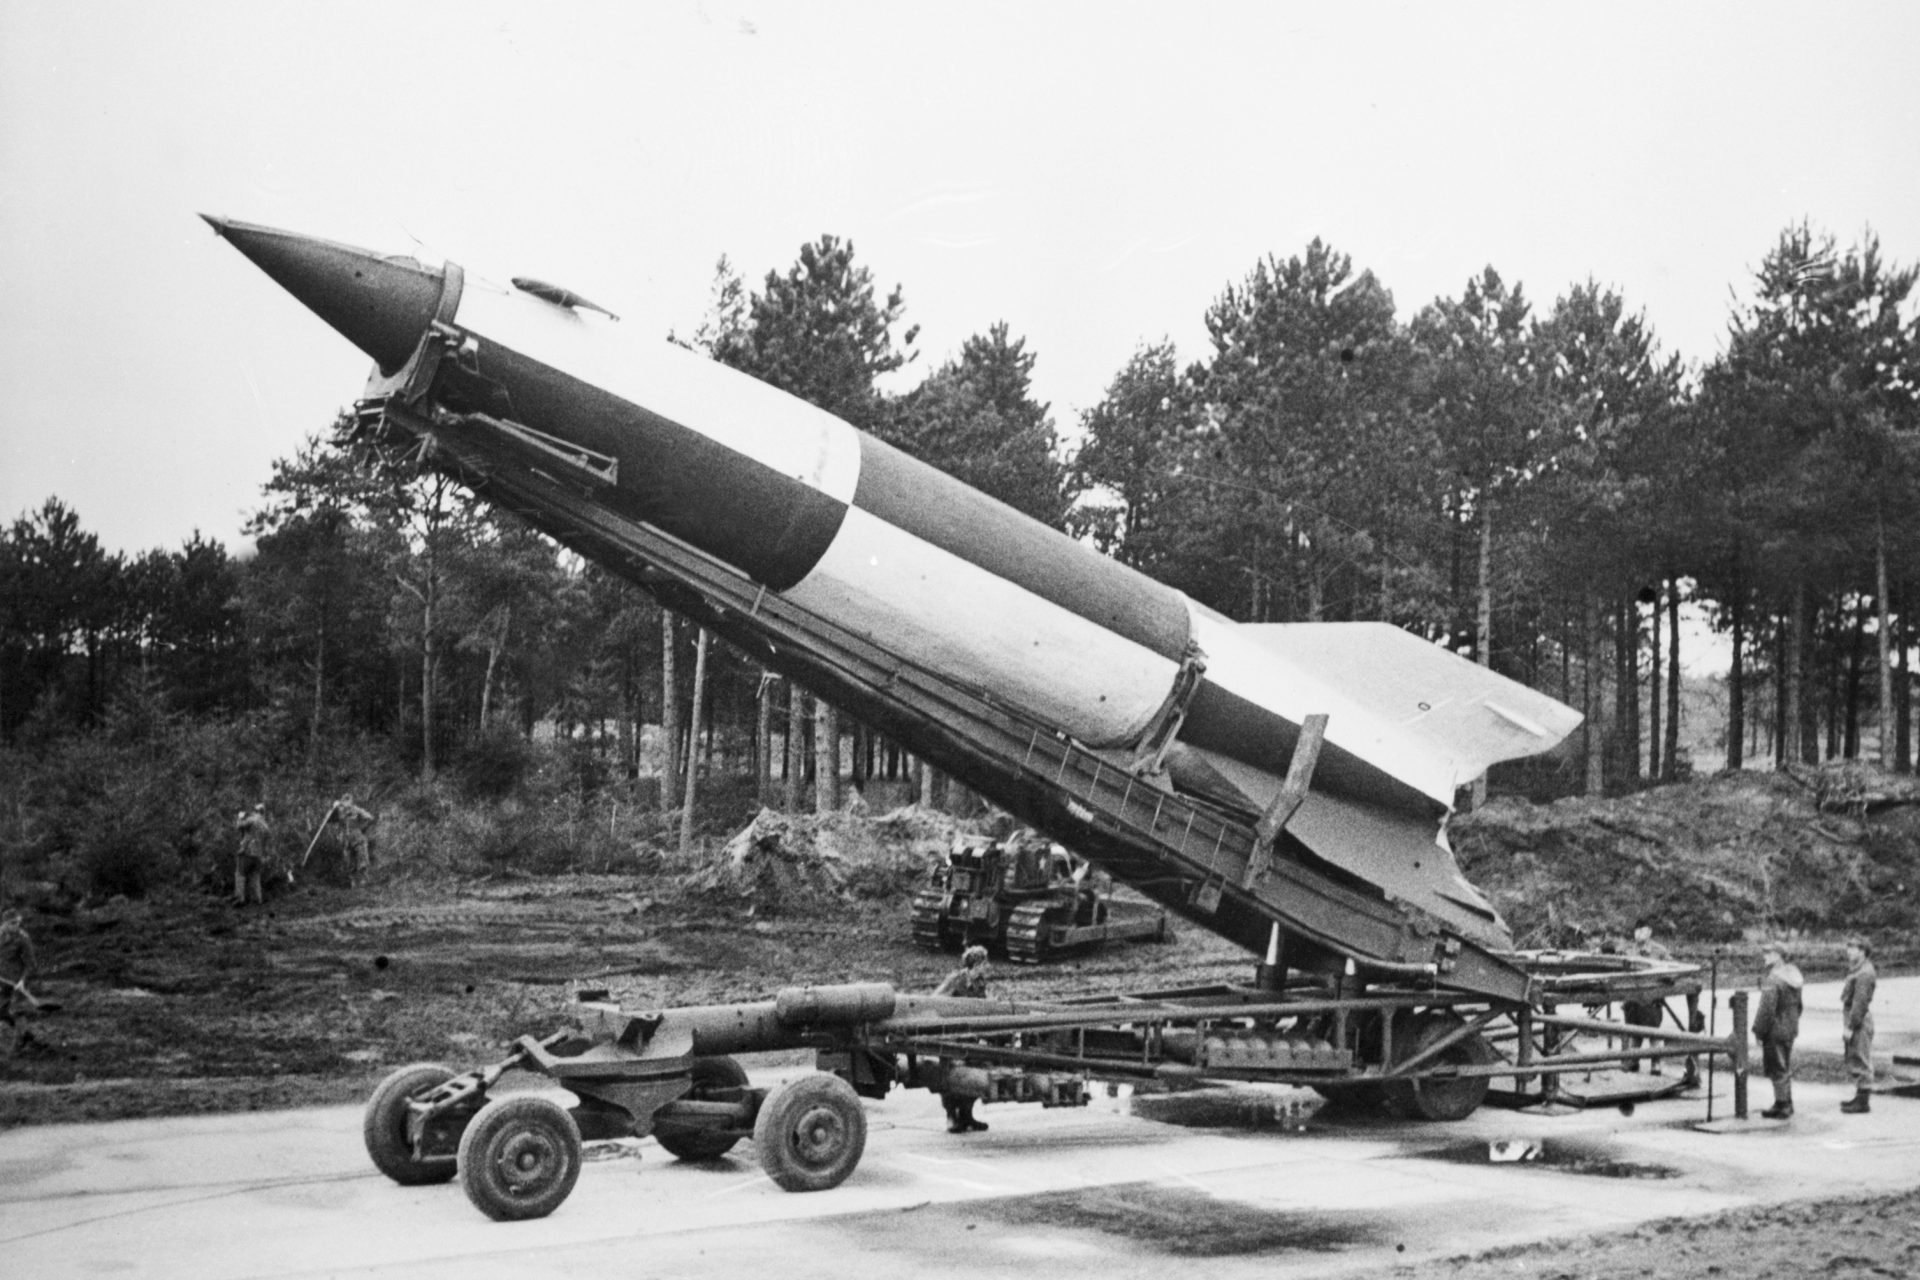 Le fameux missile V2 de l'Allemagne nazie examiné à la loupe par des experts